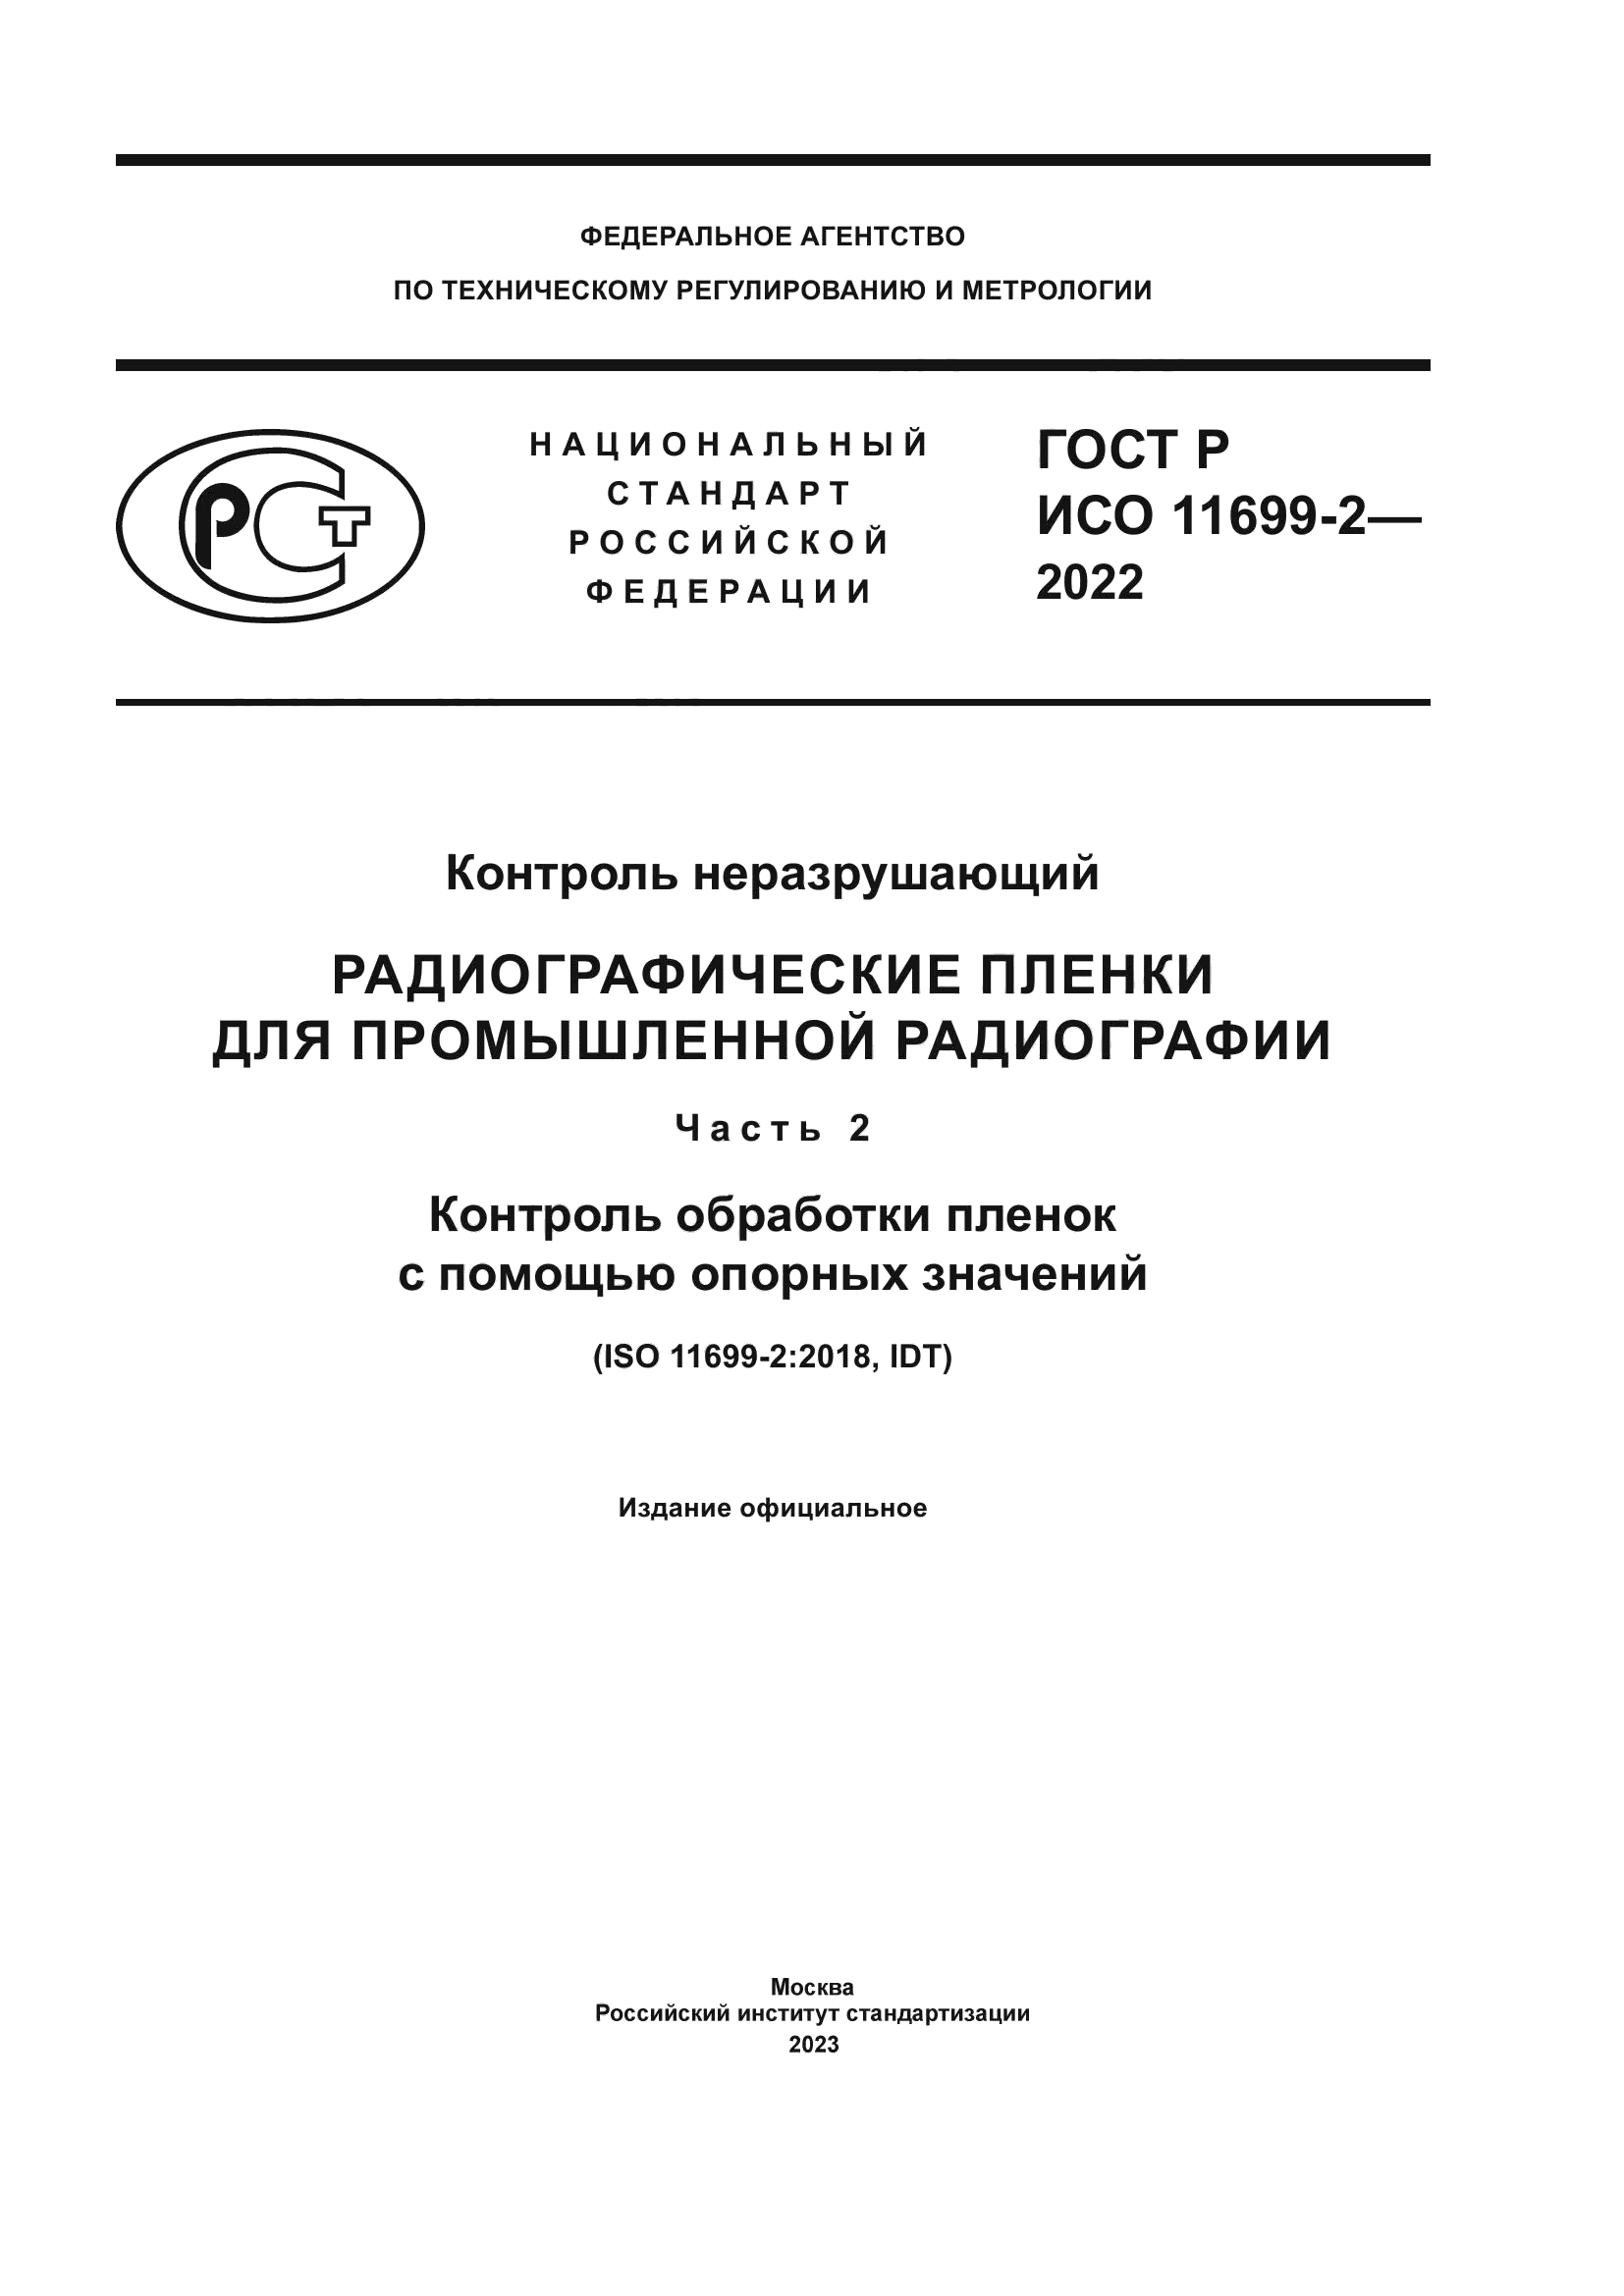 ГОСТ Р ИСО 11699-2-2022